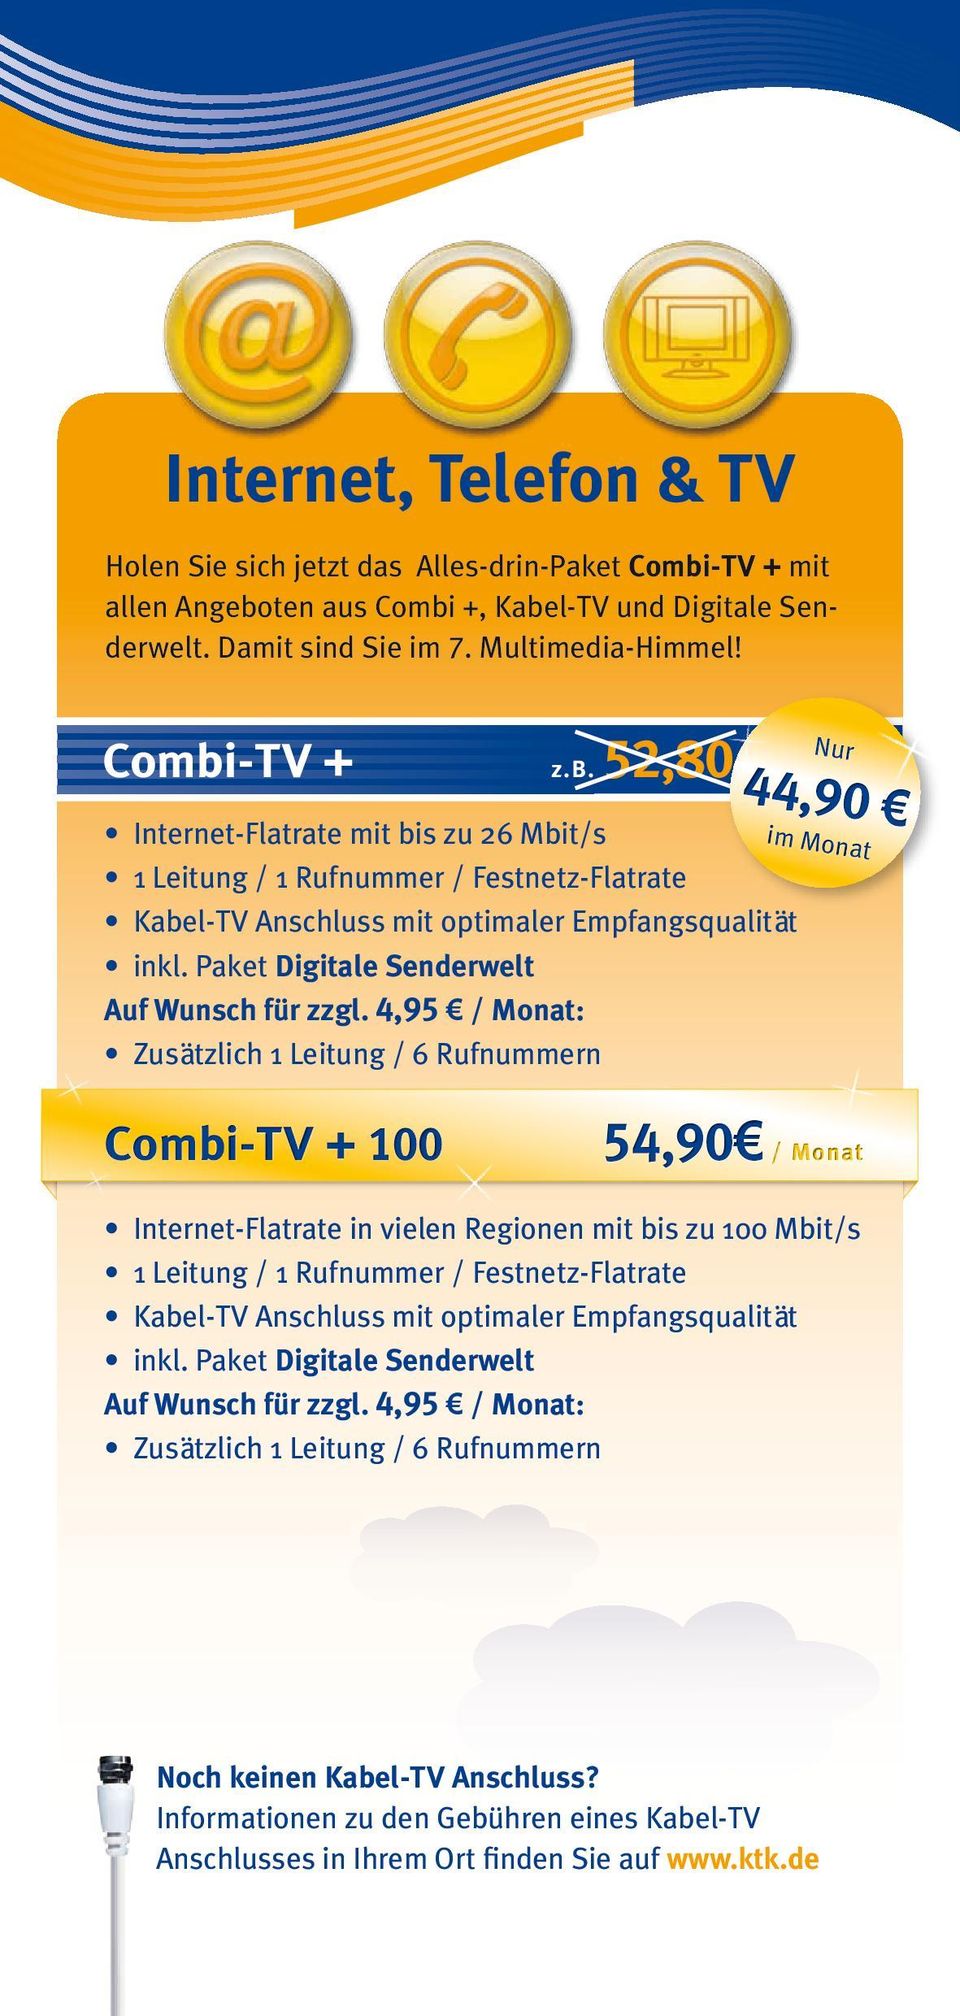 Paket Digitale Senderwelt Nur 44,90 im Monat Combi-TV + 100 54,90 / Monat Internet-Flatrate in vielen Regionen mit bis zu 100 Mbit/s 1 Leitung / 1 Rufnummer / Festnetz-Flatrate